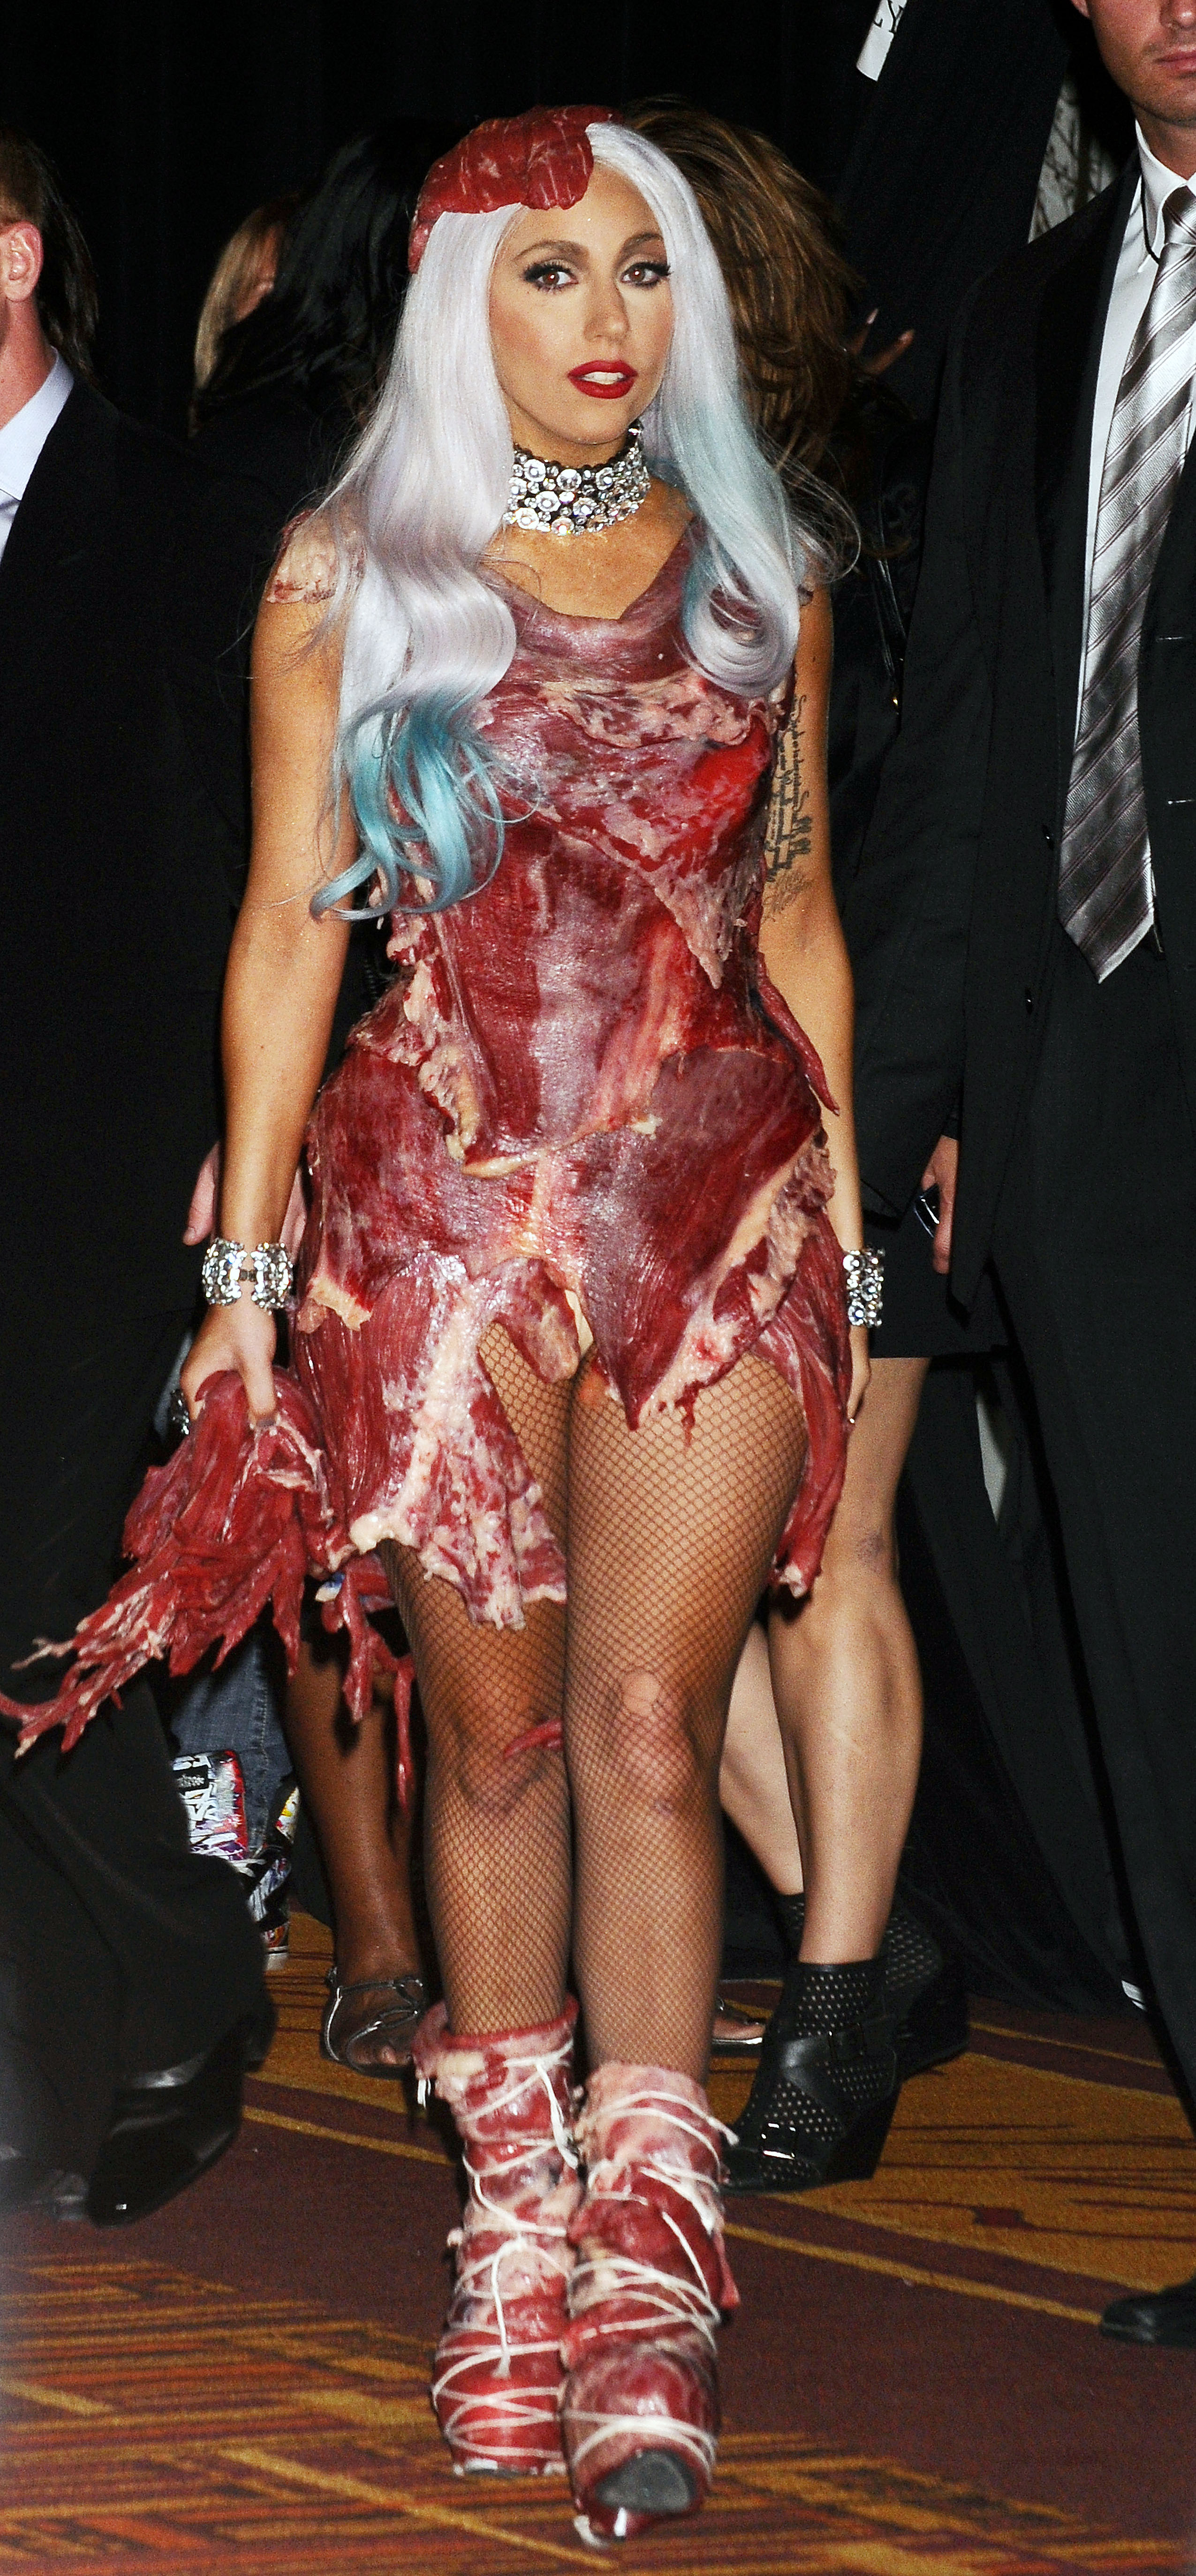 DC Lady Gaga VMA 20100912 77